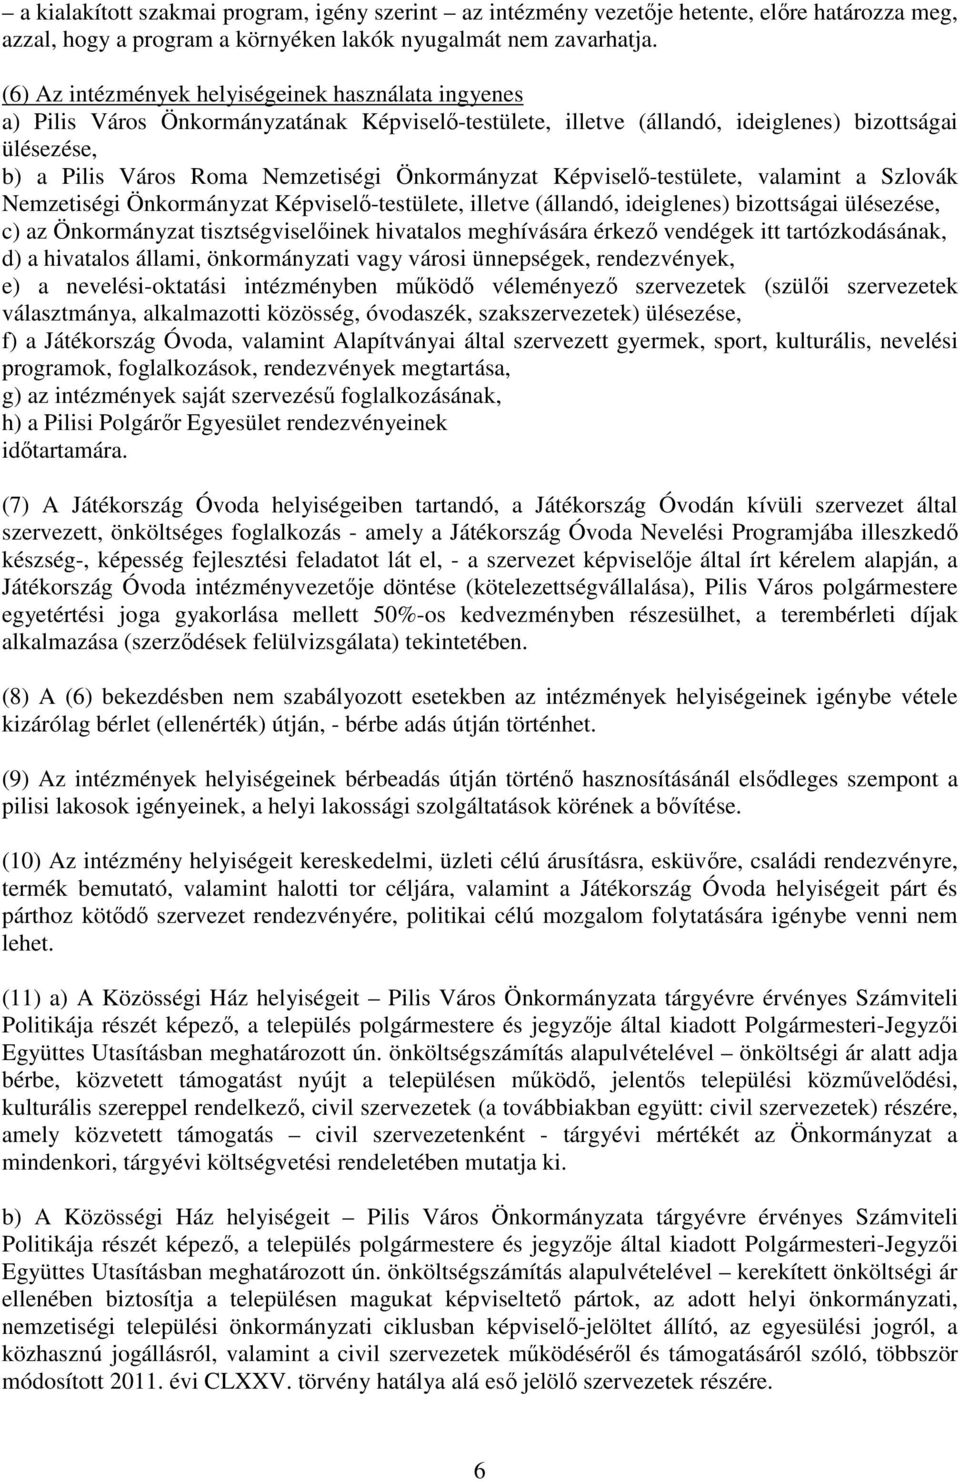 Önkormányzat Képviselő-testülete, valamint a Szlovák Nemzetiségi Önkormányzat Képviselő-testülete, illetve (állandó, ideiglenes) bizottságai ülésezése, c) az Önkormányzat tisztségviselőinek hivatalos